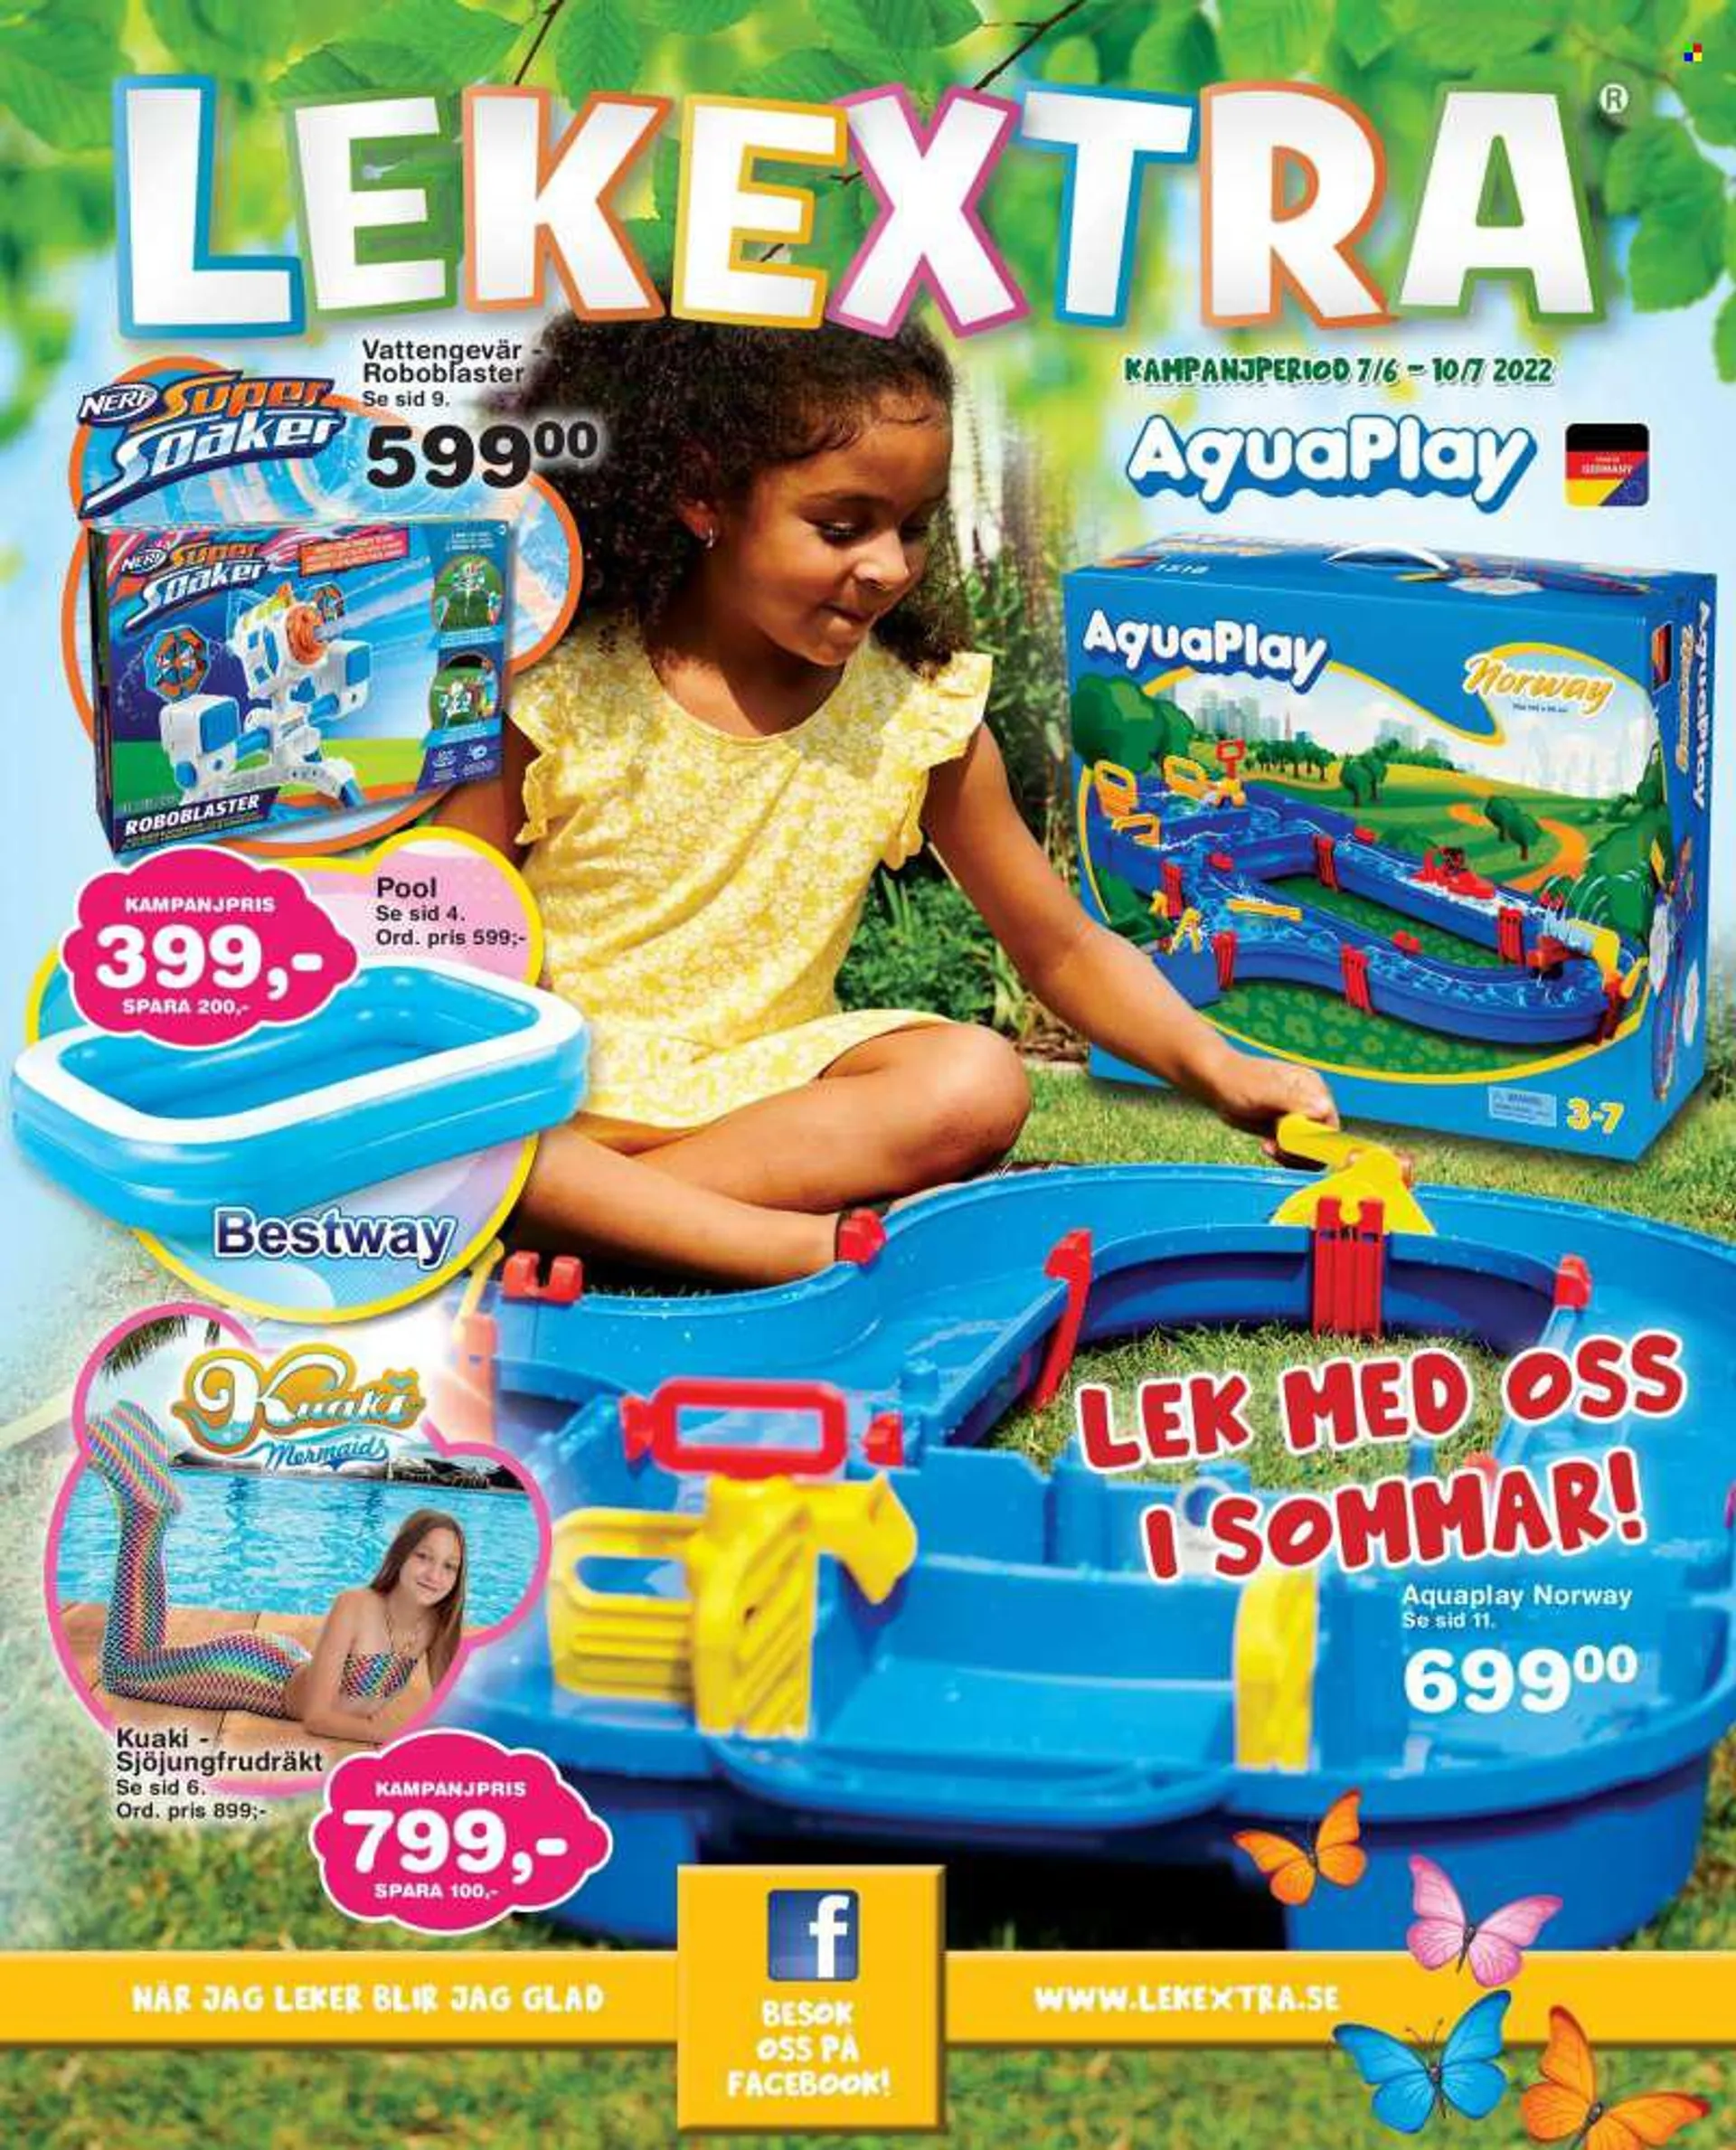 Lekextra reklamblad - 7/6 2022 - 10/7 2022 - varor från reklamblad - Nerf, pool. Sida 1.